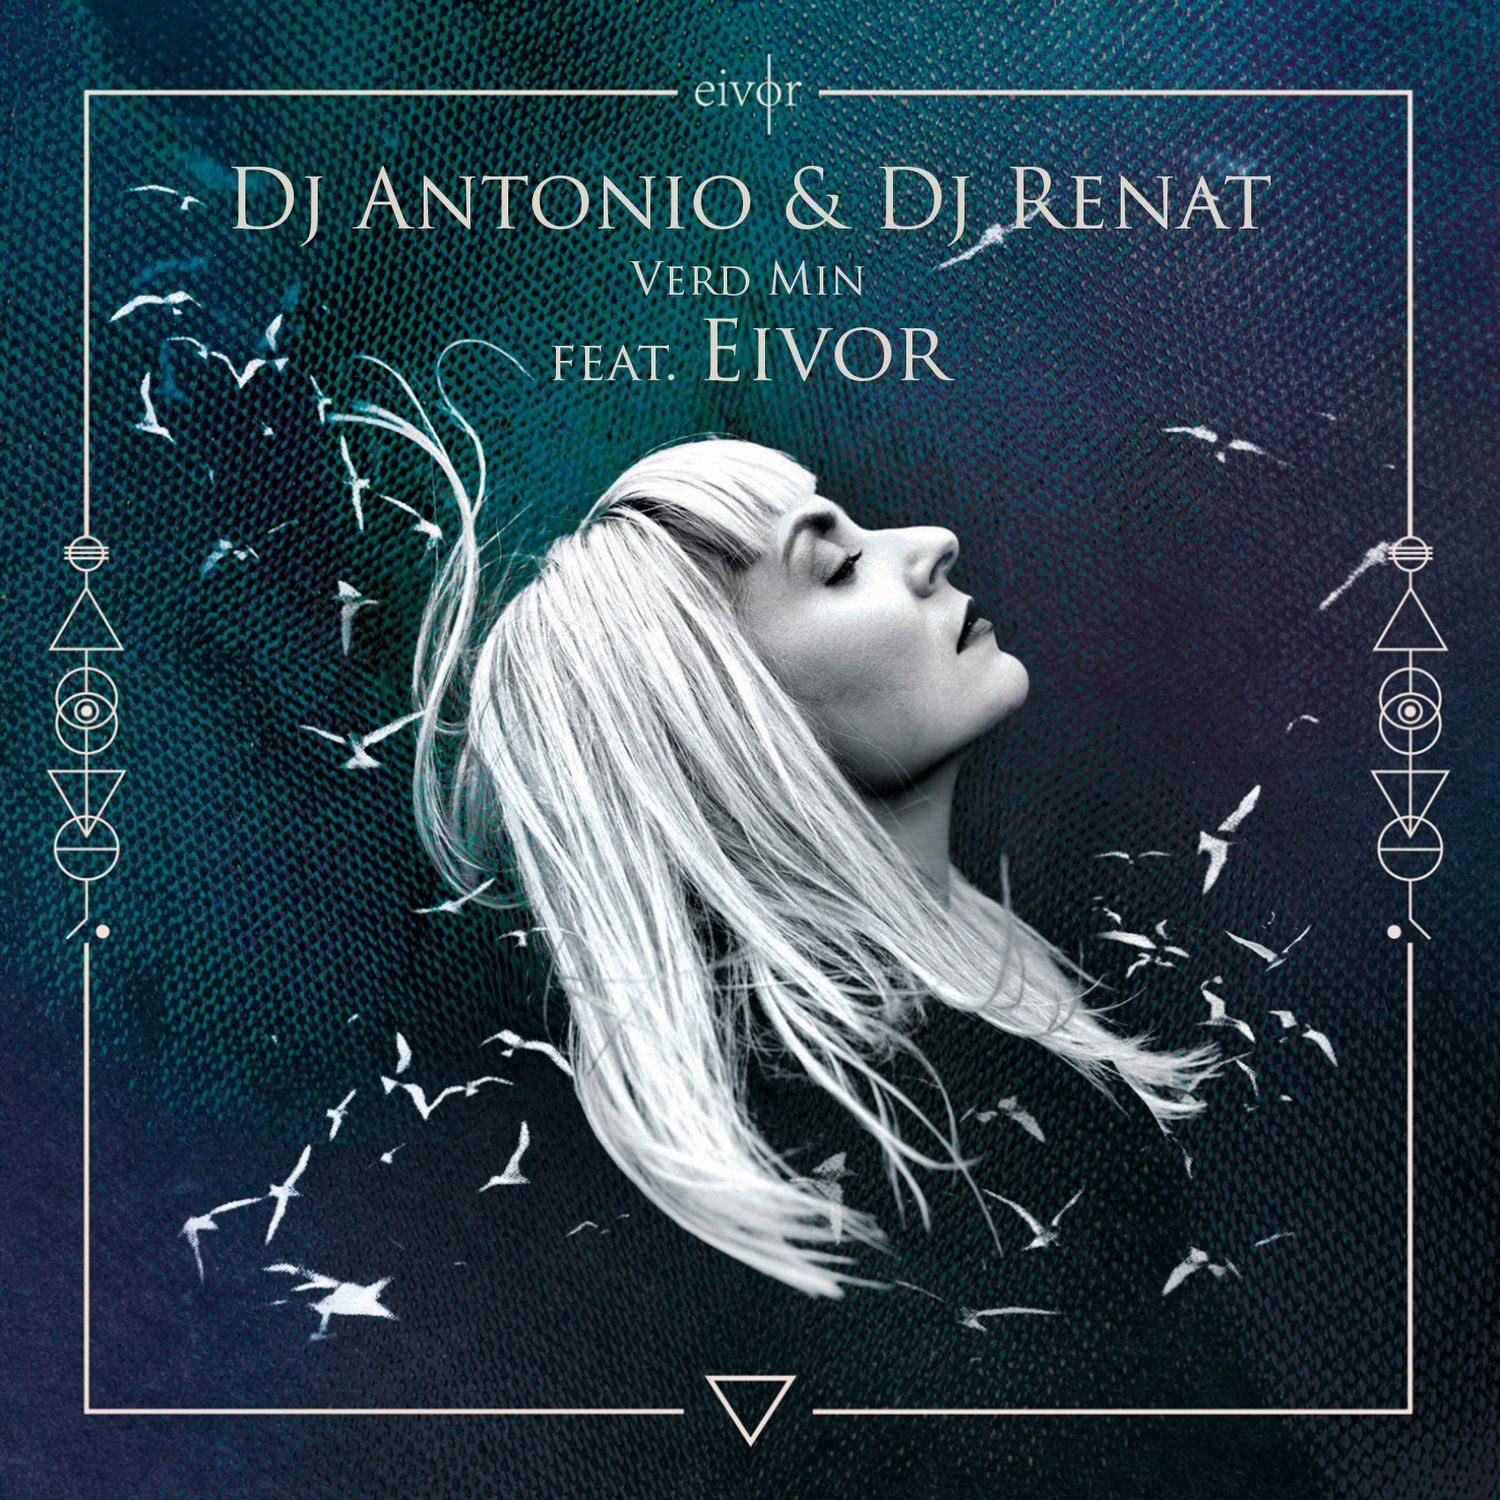 Aflaai Dj Antonio & Dj Renat - Verd Min (feat. Eivor) (Club Mix)